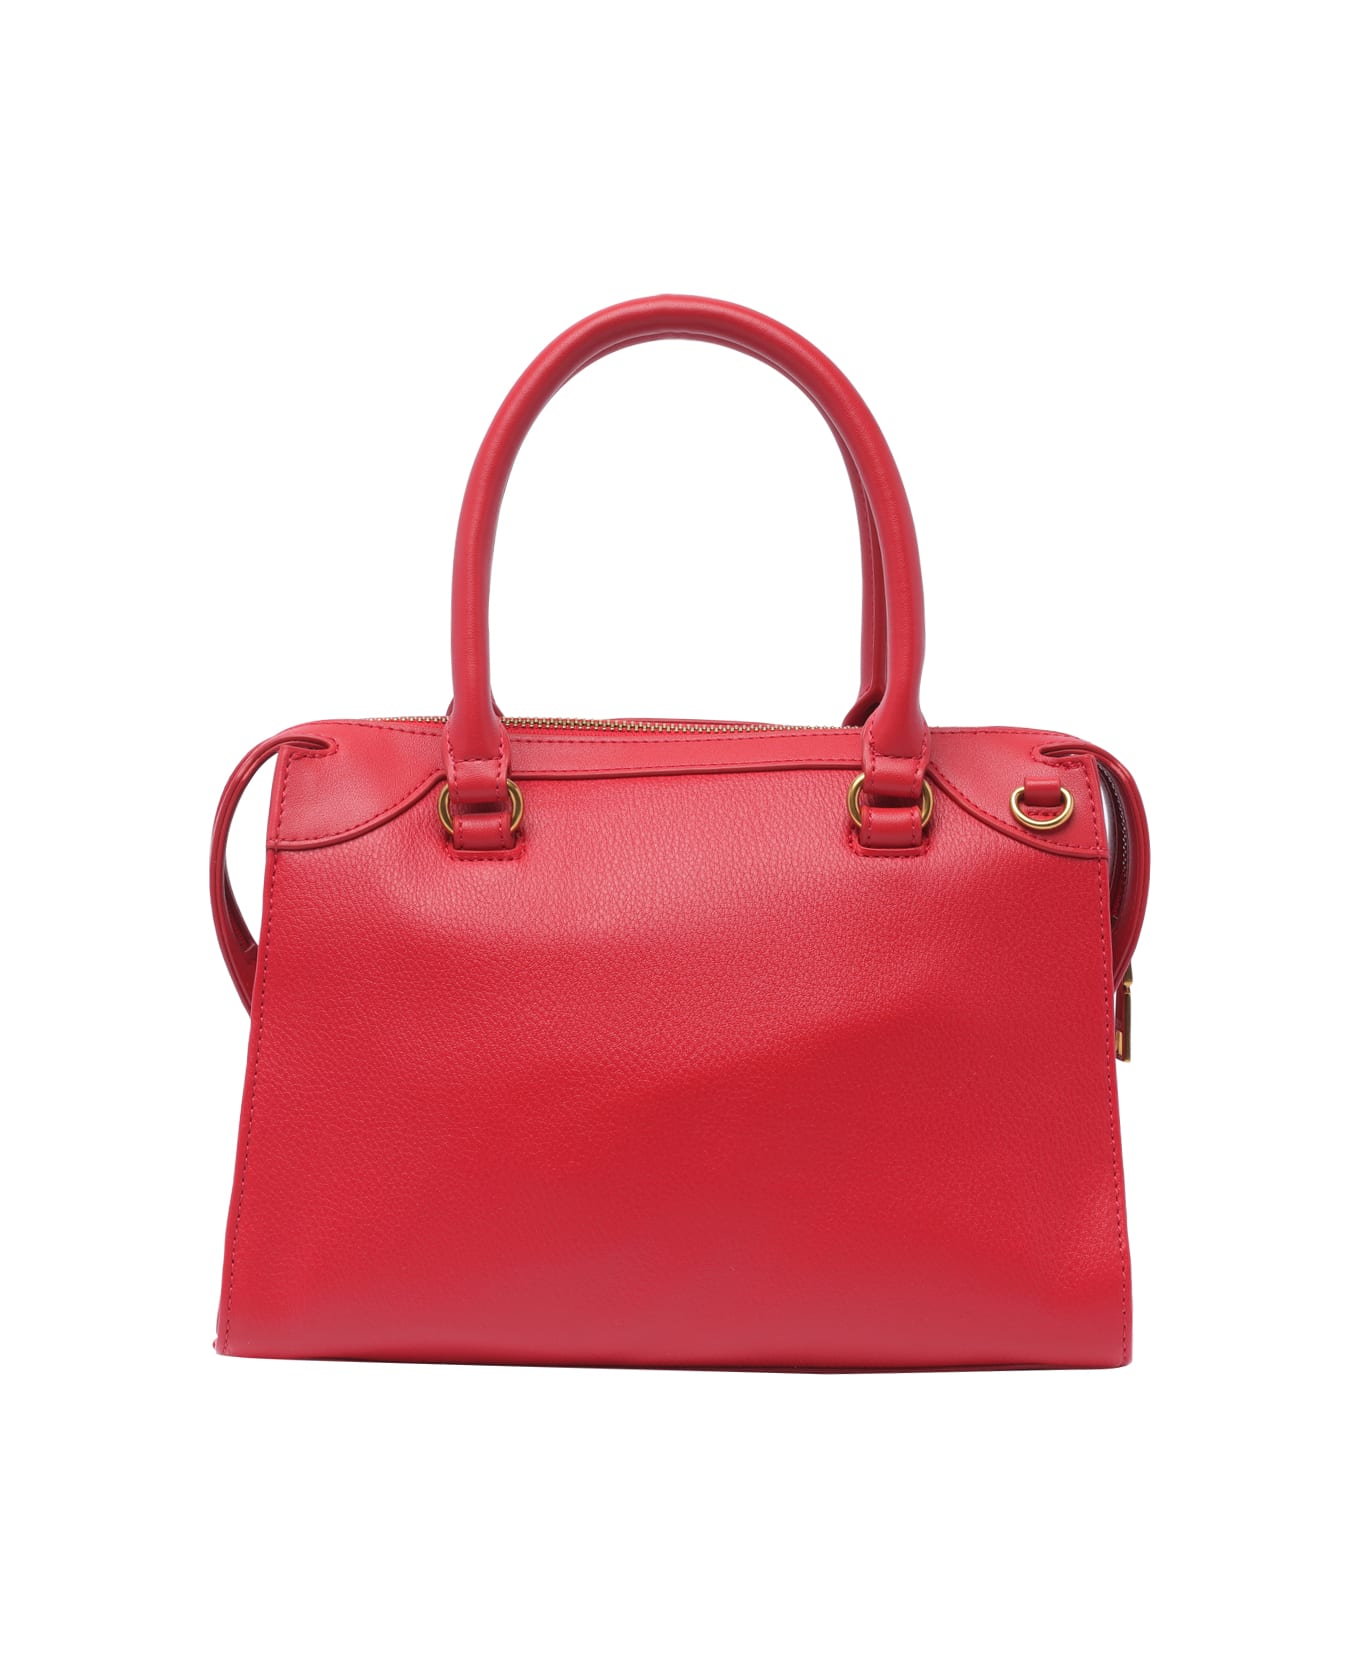 Liu-Jo Logo Handbag - Red トートバッグ